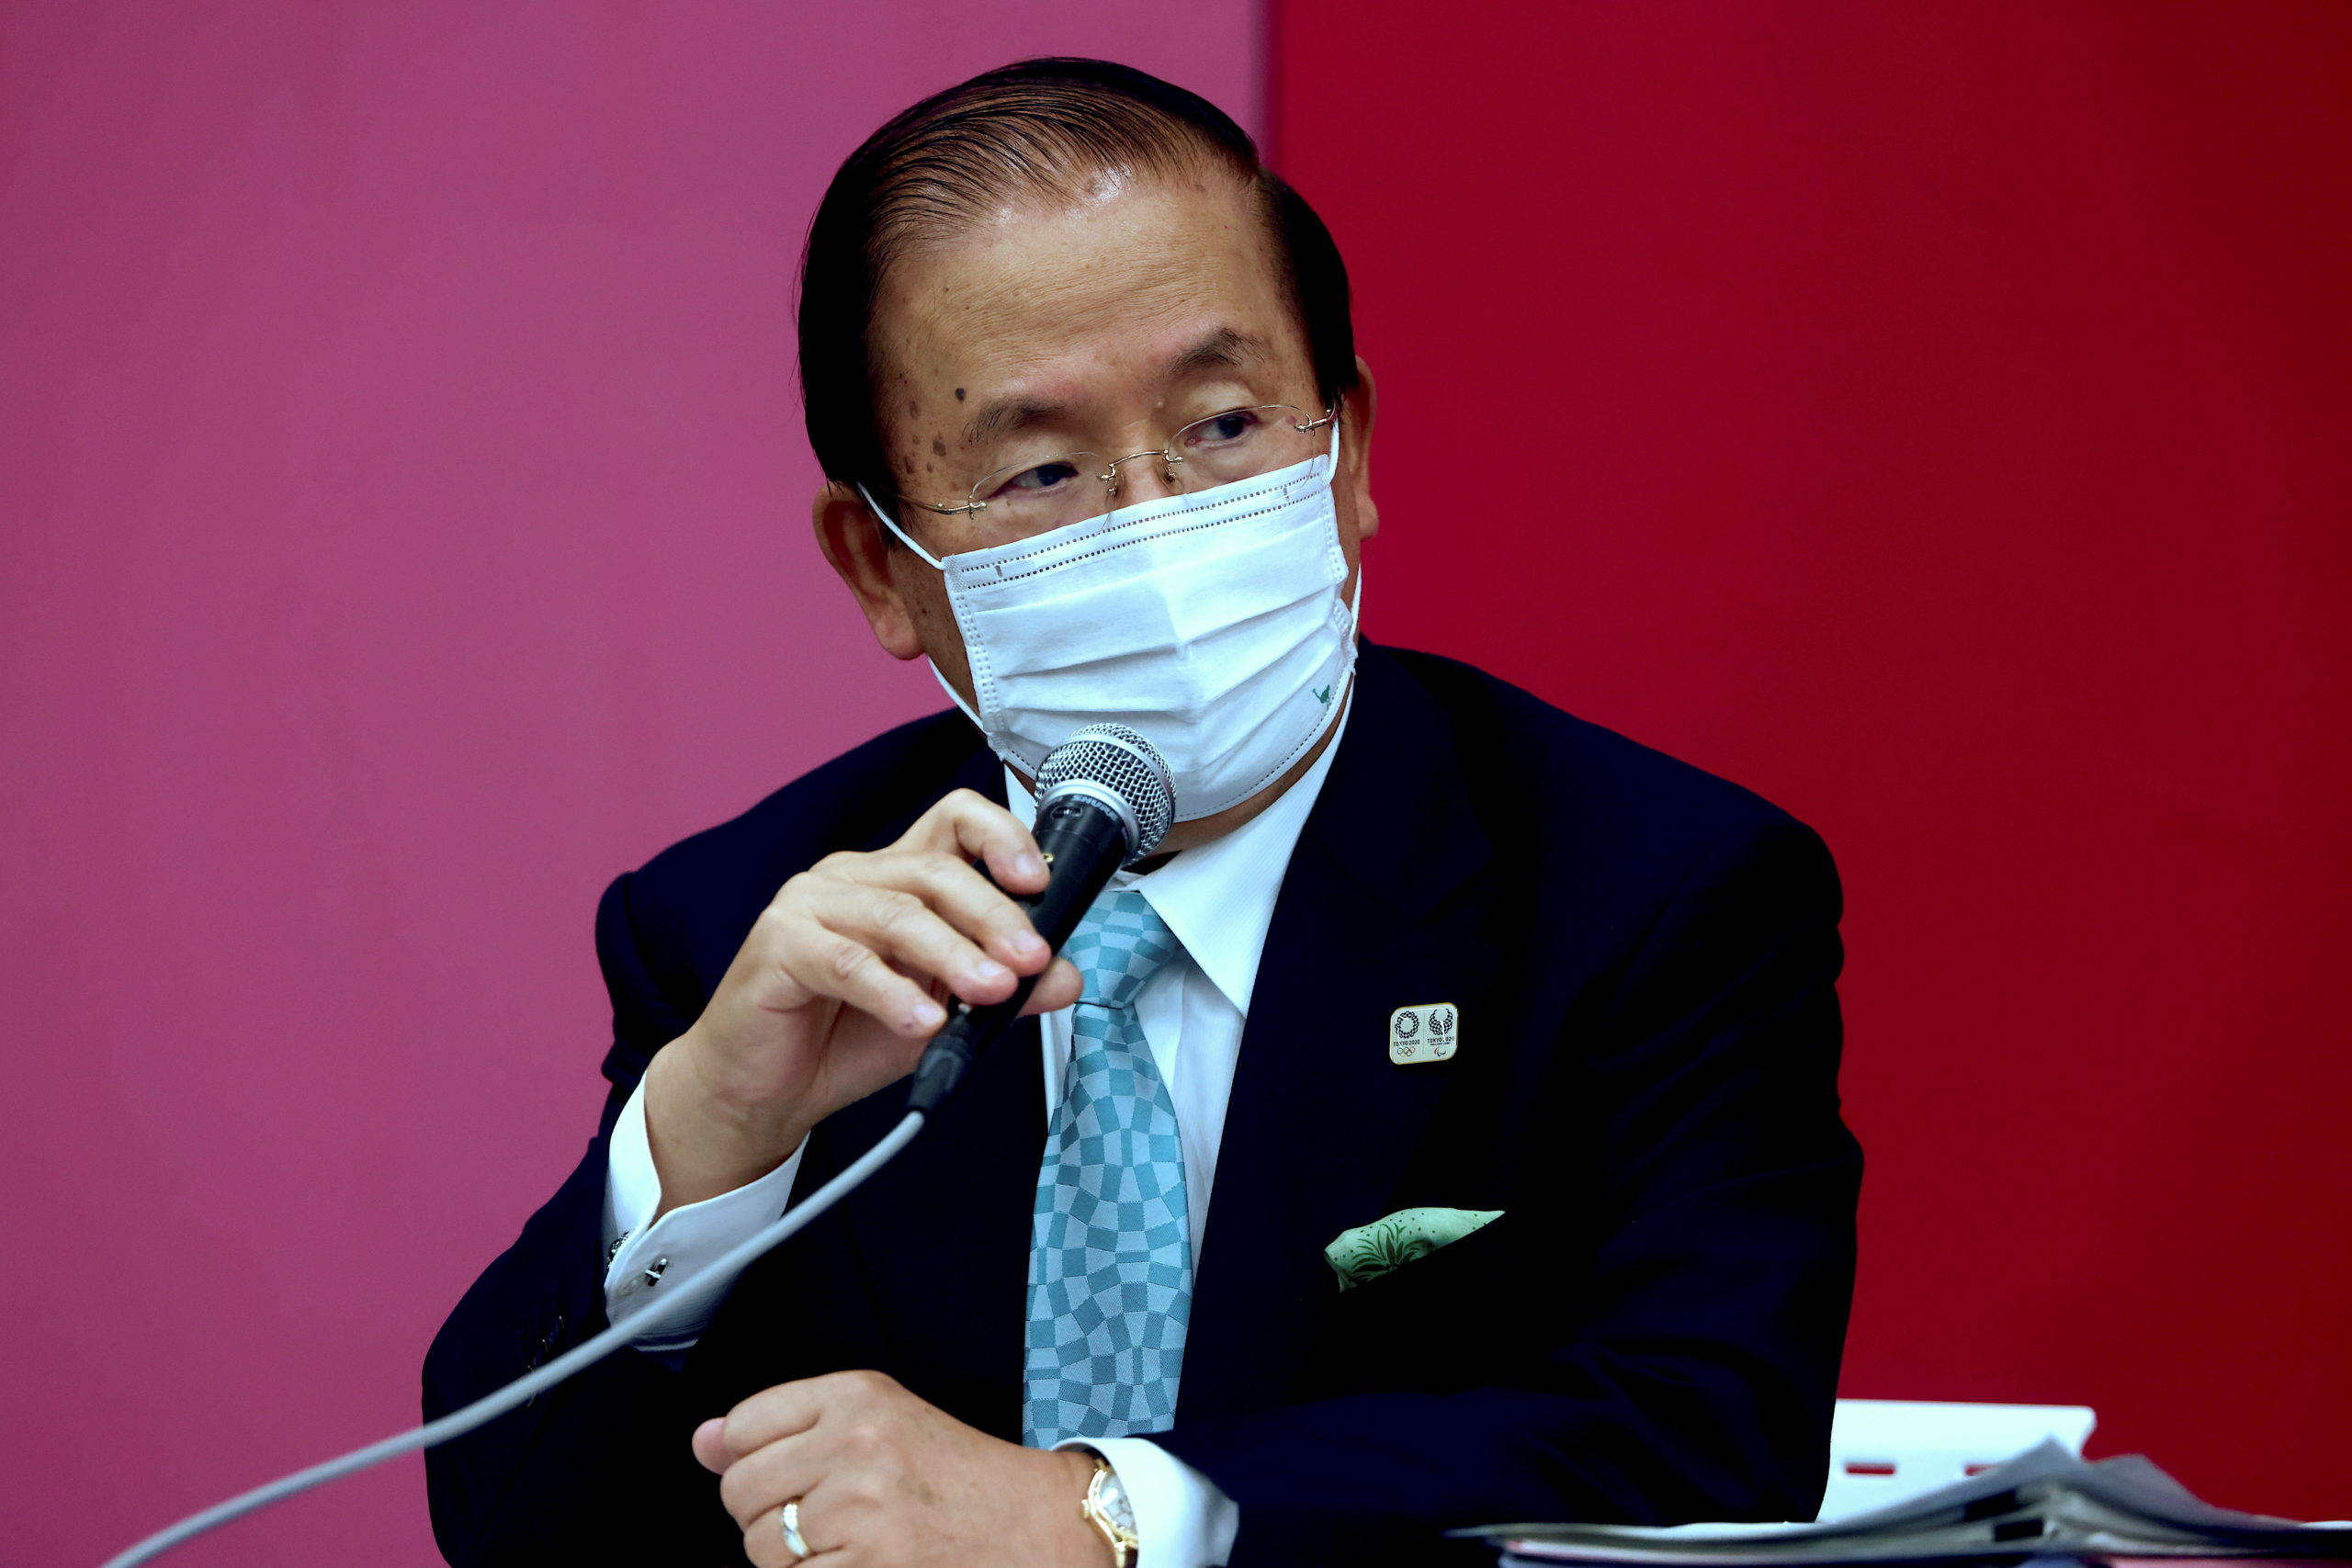 Tokyo 2020 CEO Toshiro Muto